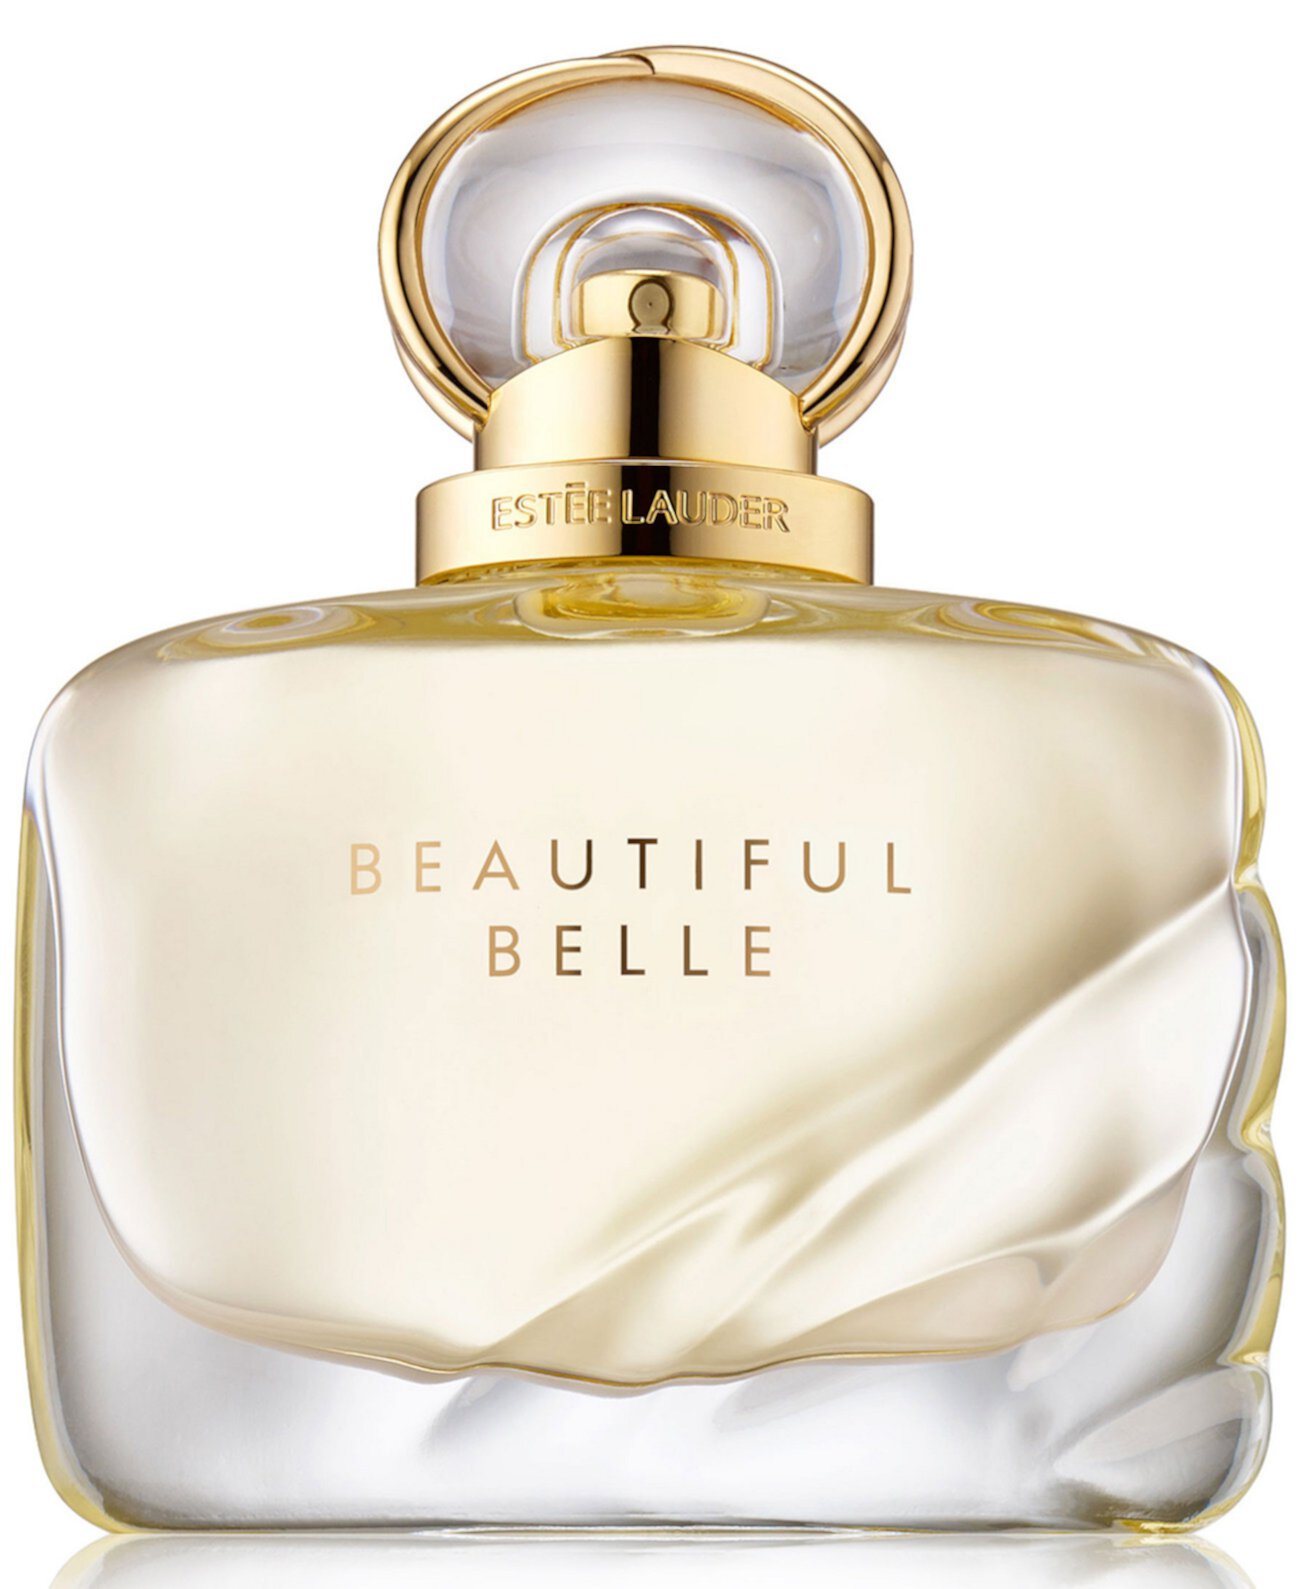 Парфюмированная вода Beautiful Belle, спрей, 3,4 унции. Estee Lauder